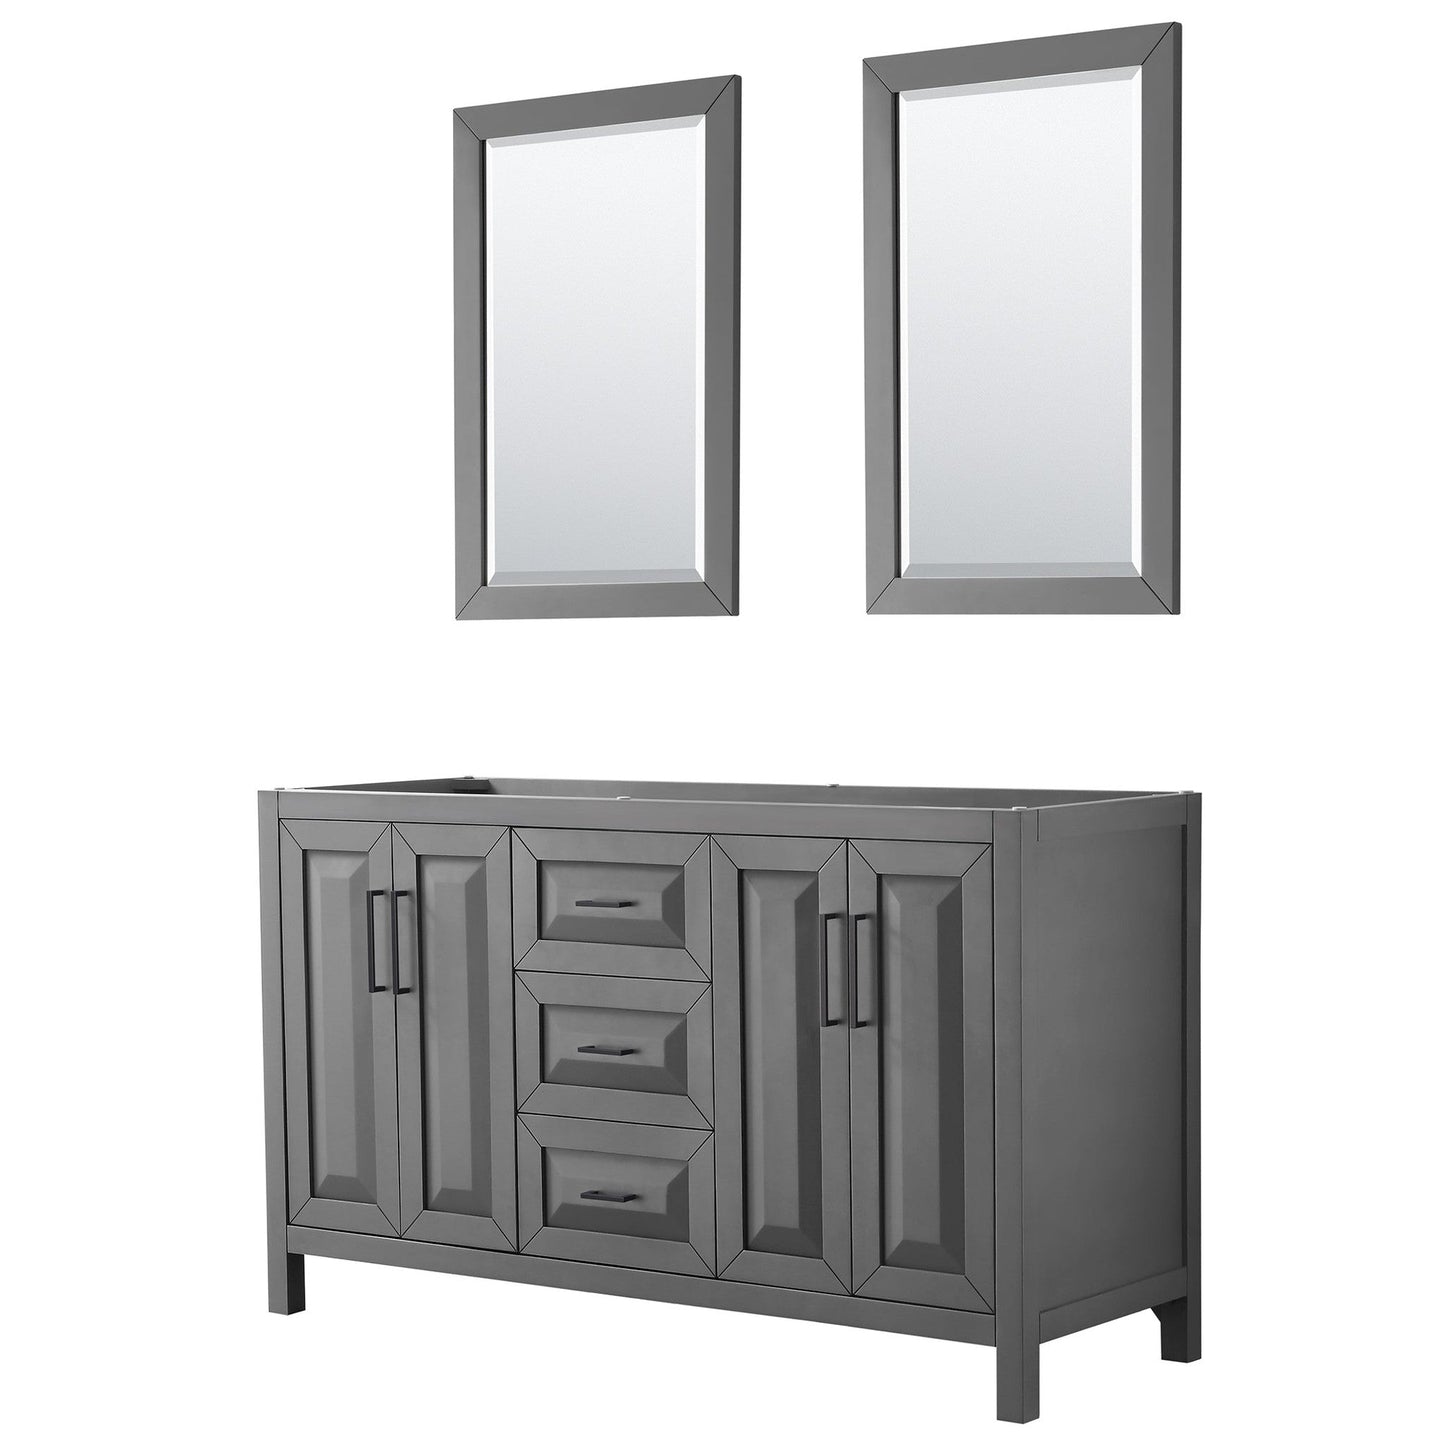 Daria 60" Double Bathroom Vanity in Dark Gray, No Countertop, No Sink, Matte Black Trim, 24" Mirrors